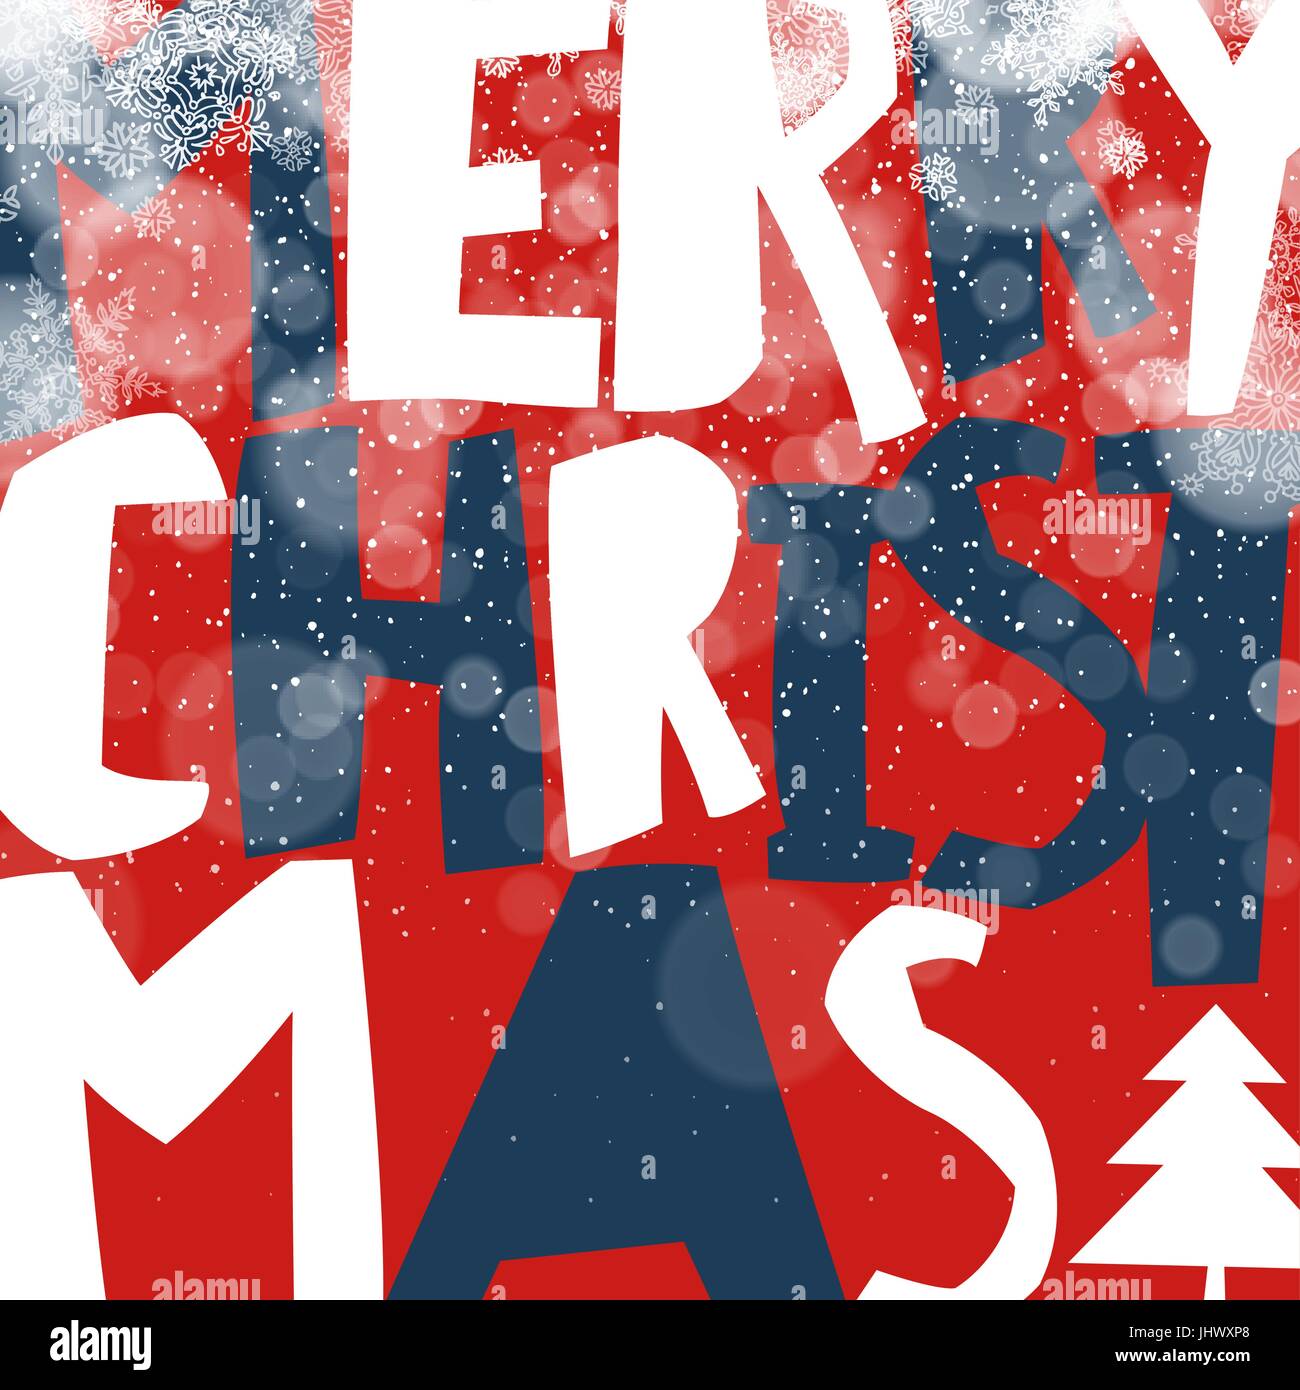 Merry Christmas Greeting Card Ansichtskarte-Xmas-Design. Weihnachtslichter und Schneefall. Vektor-illustration Stock Vektor